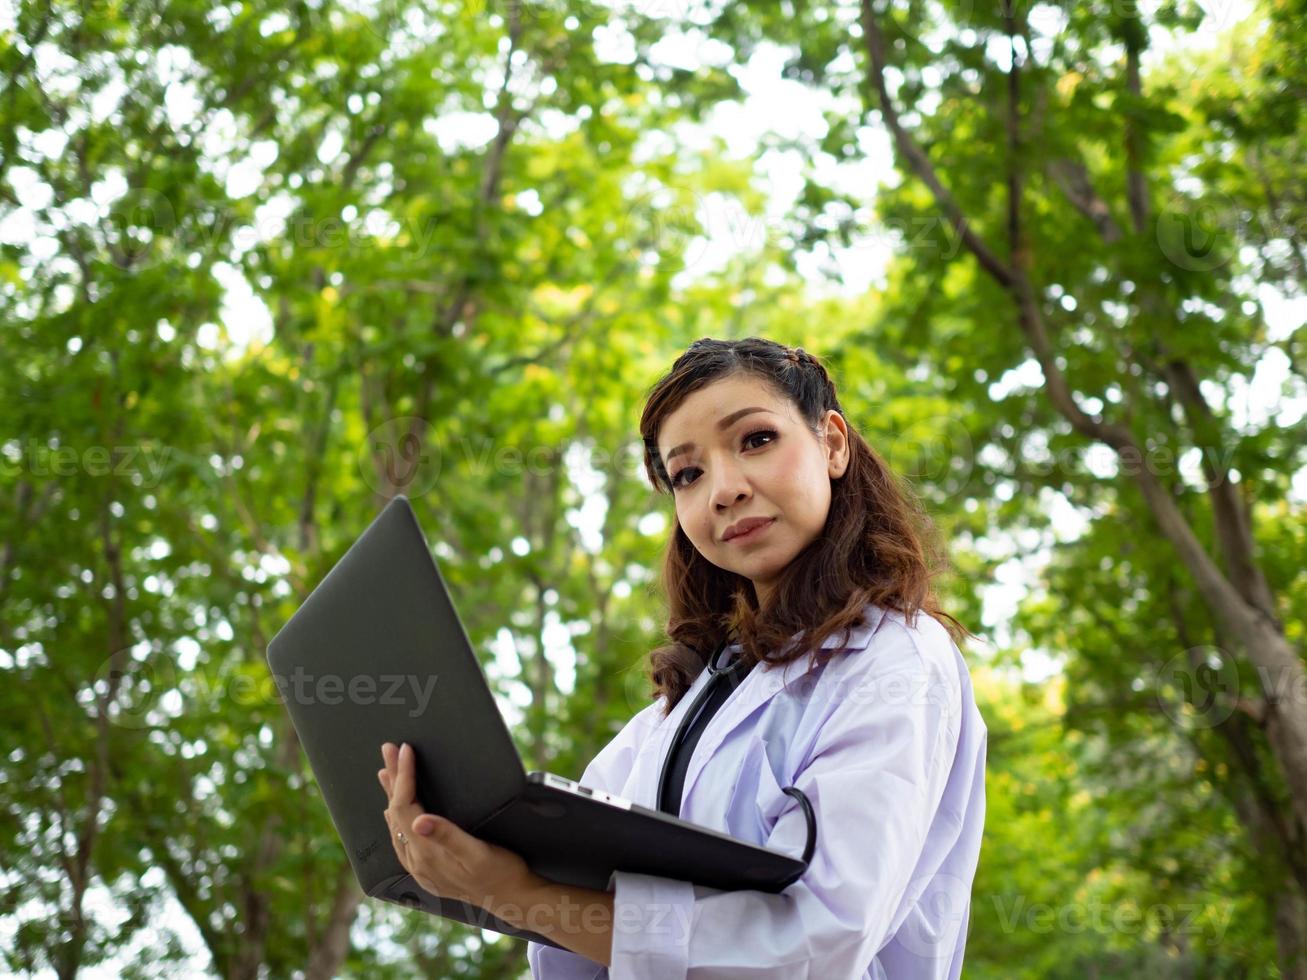 fêmea mulher senhora bonita bonita enfermeira médico cientista segurando notebook computador tablet olhando câmera ao ar livre jardim natural laboratório de pesquisa médico ciência cuidados de saúde médico foto